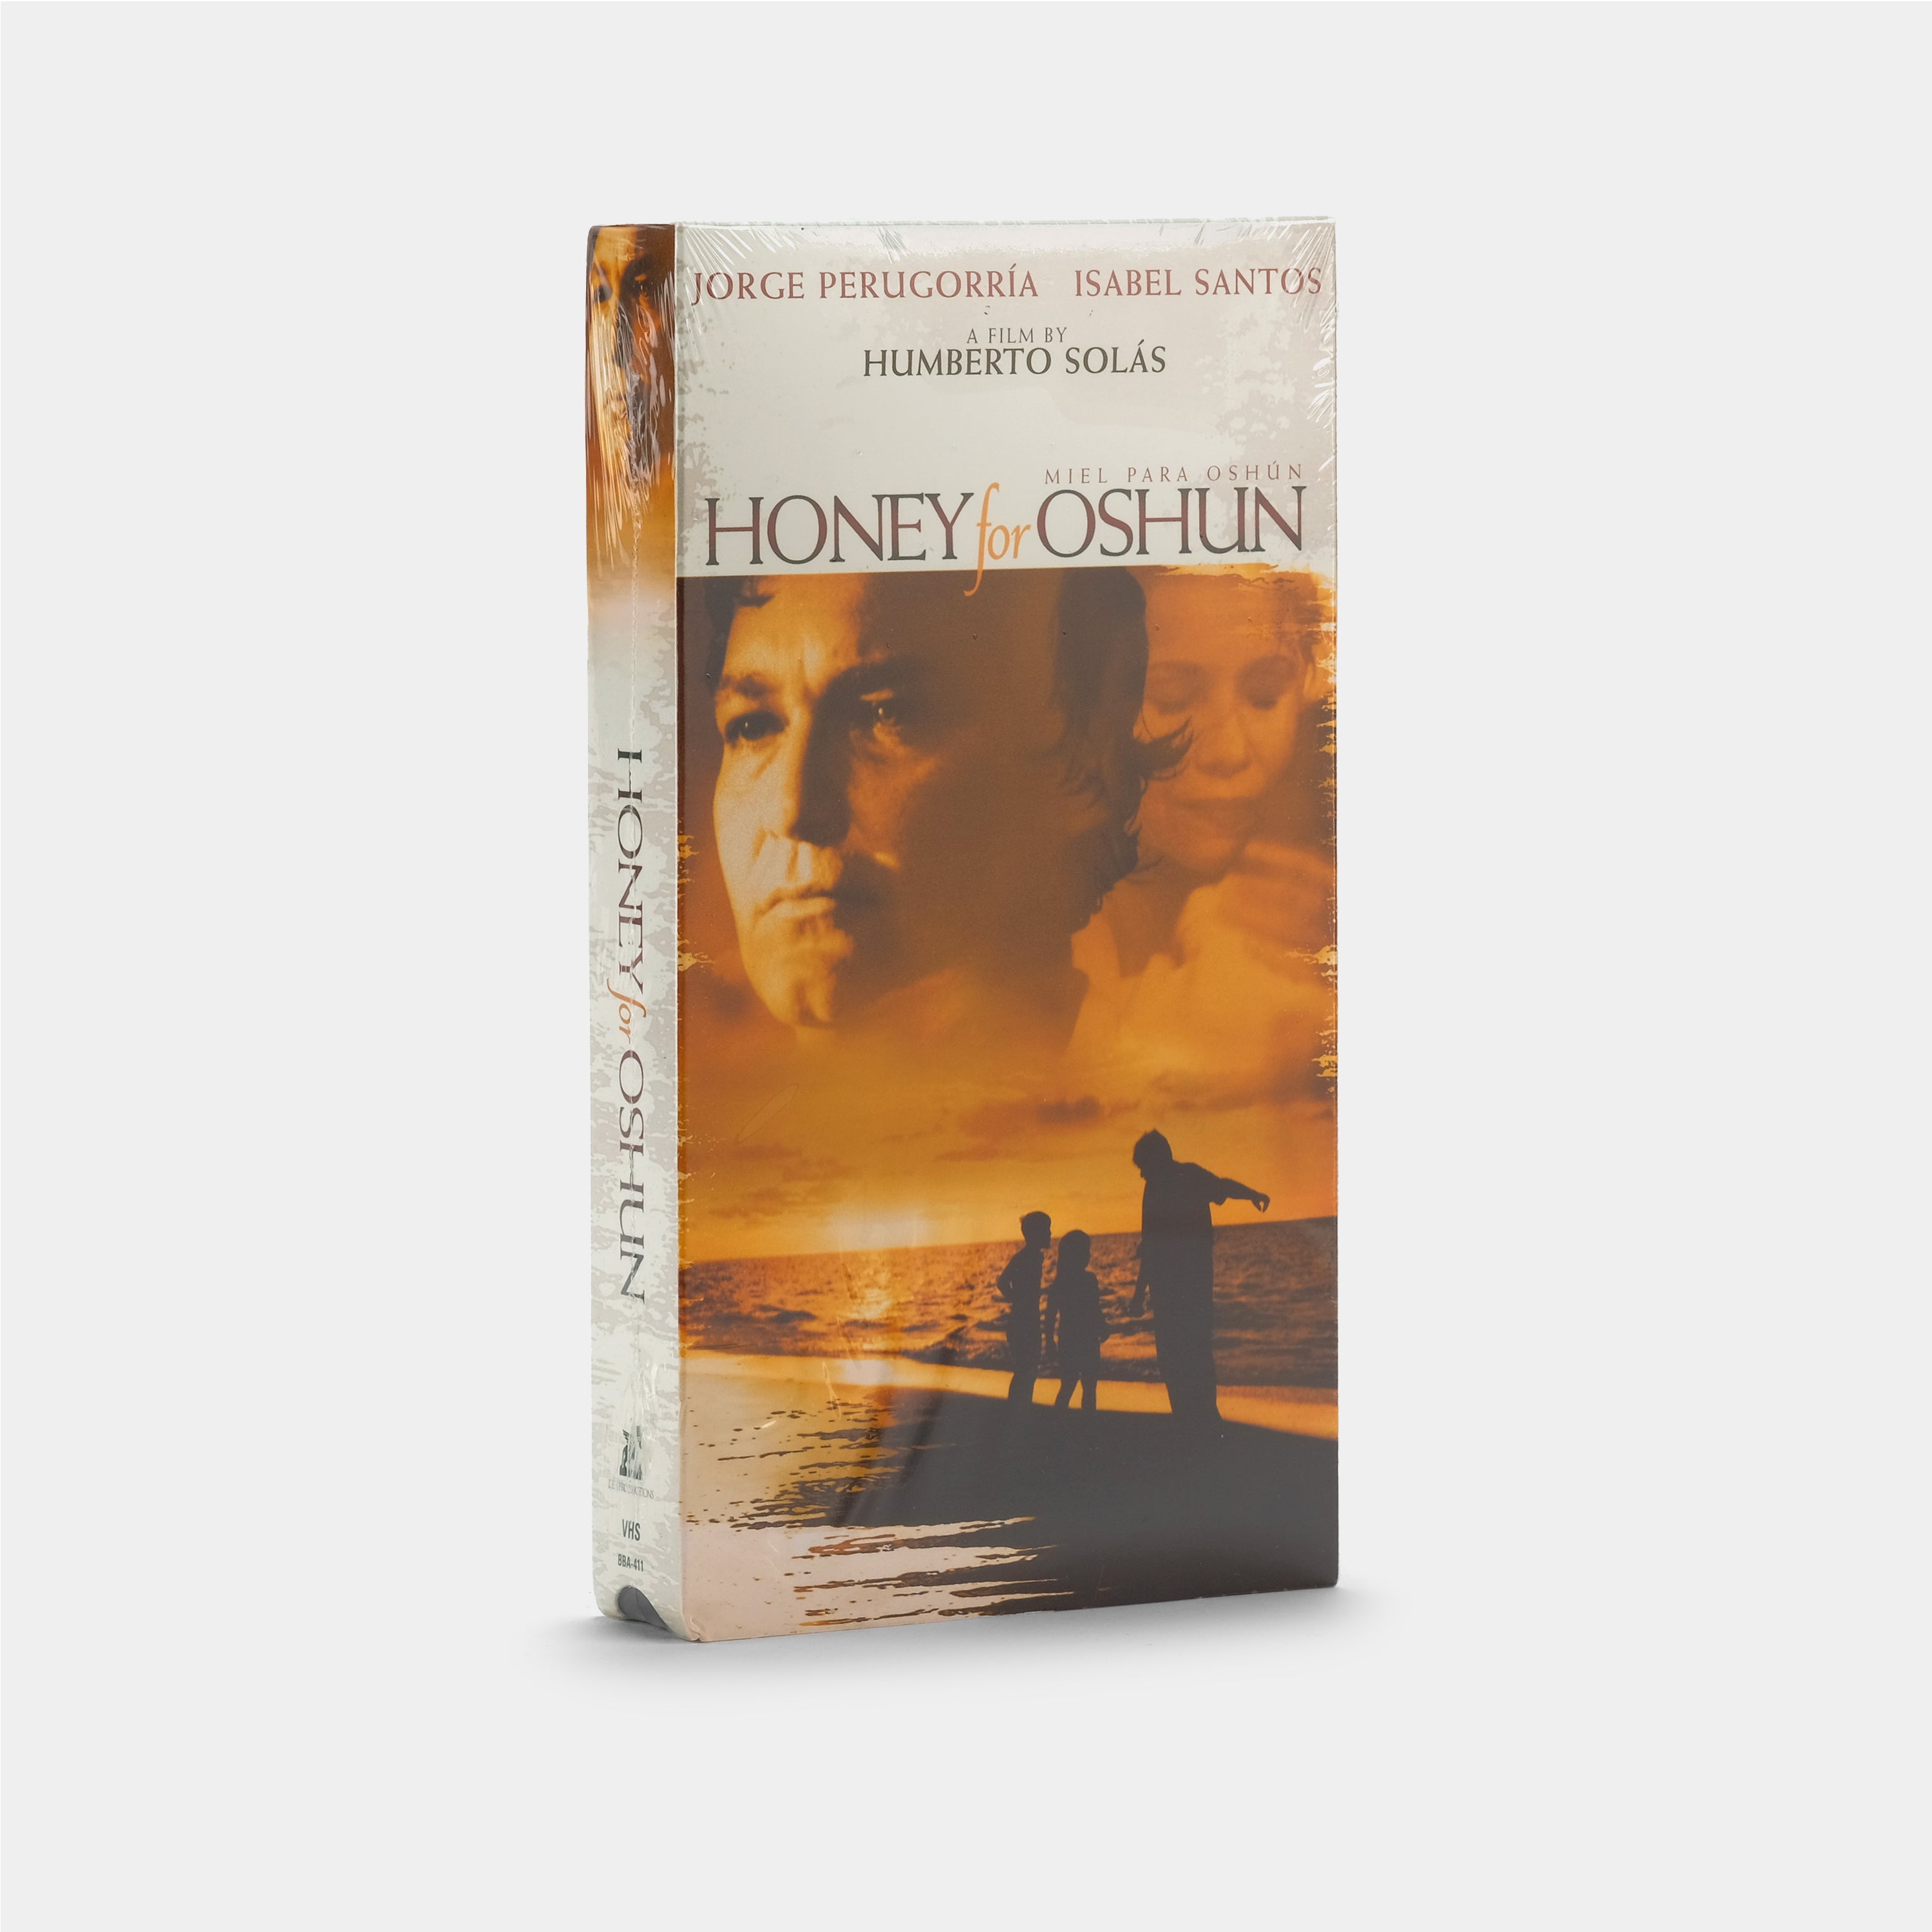 Honey for Oshun (Sealed) VHS Tape